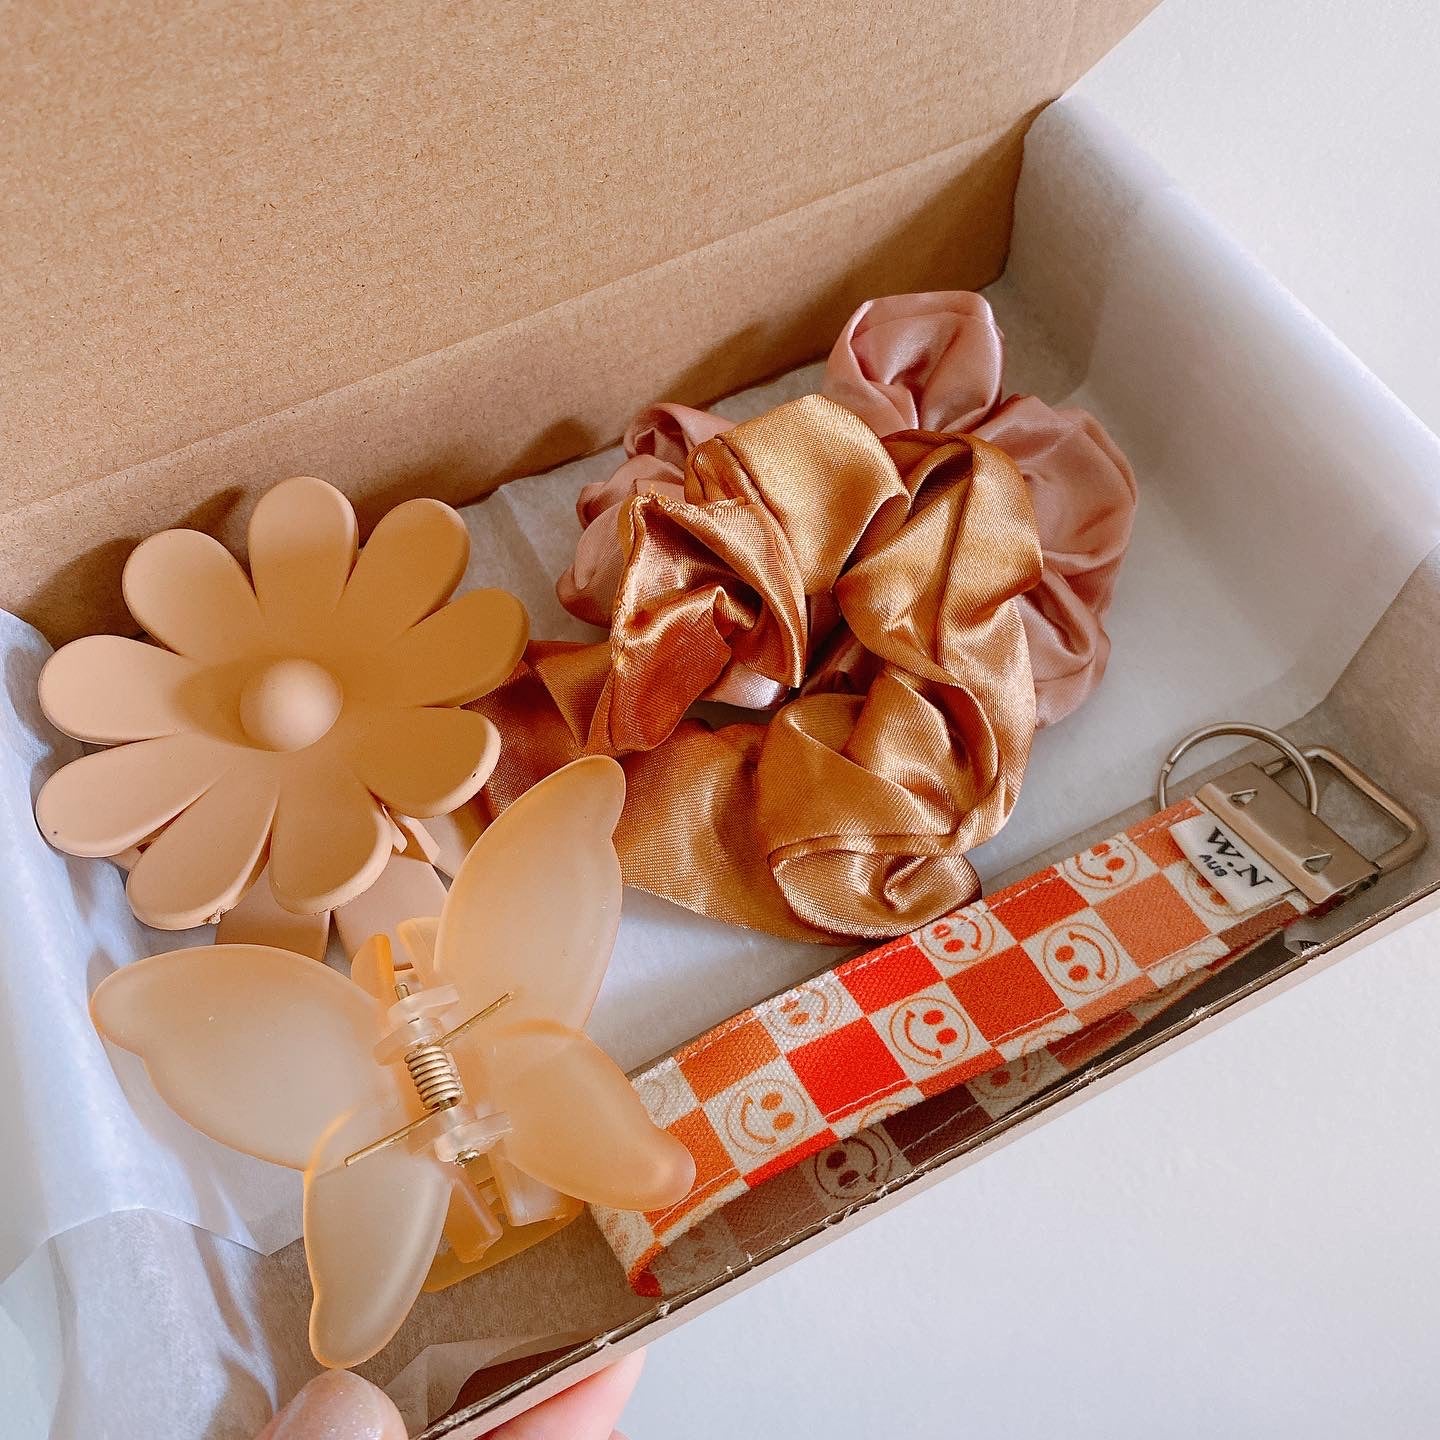 Piper WN Gift box